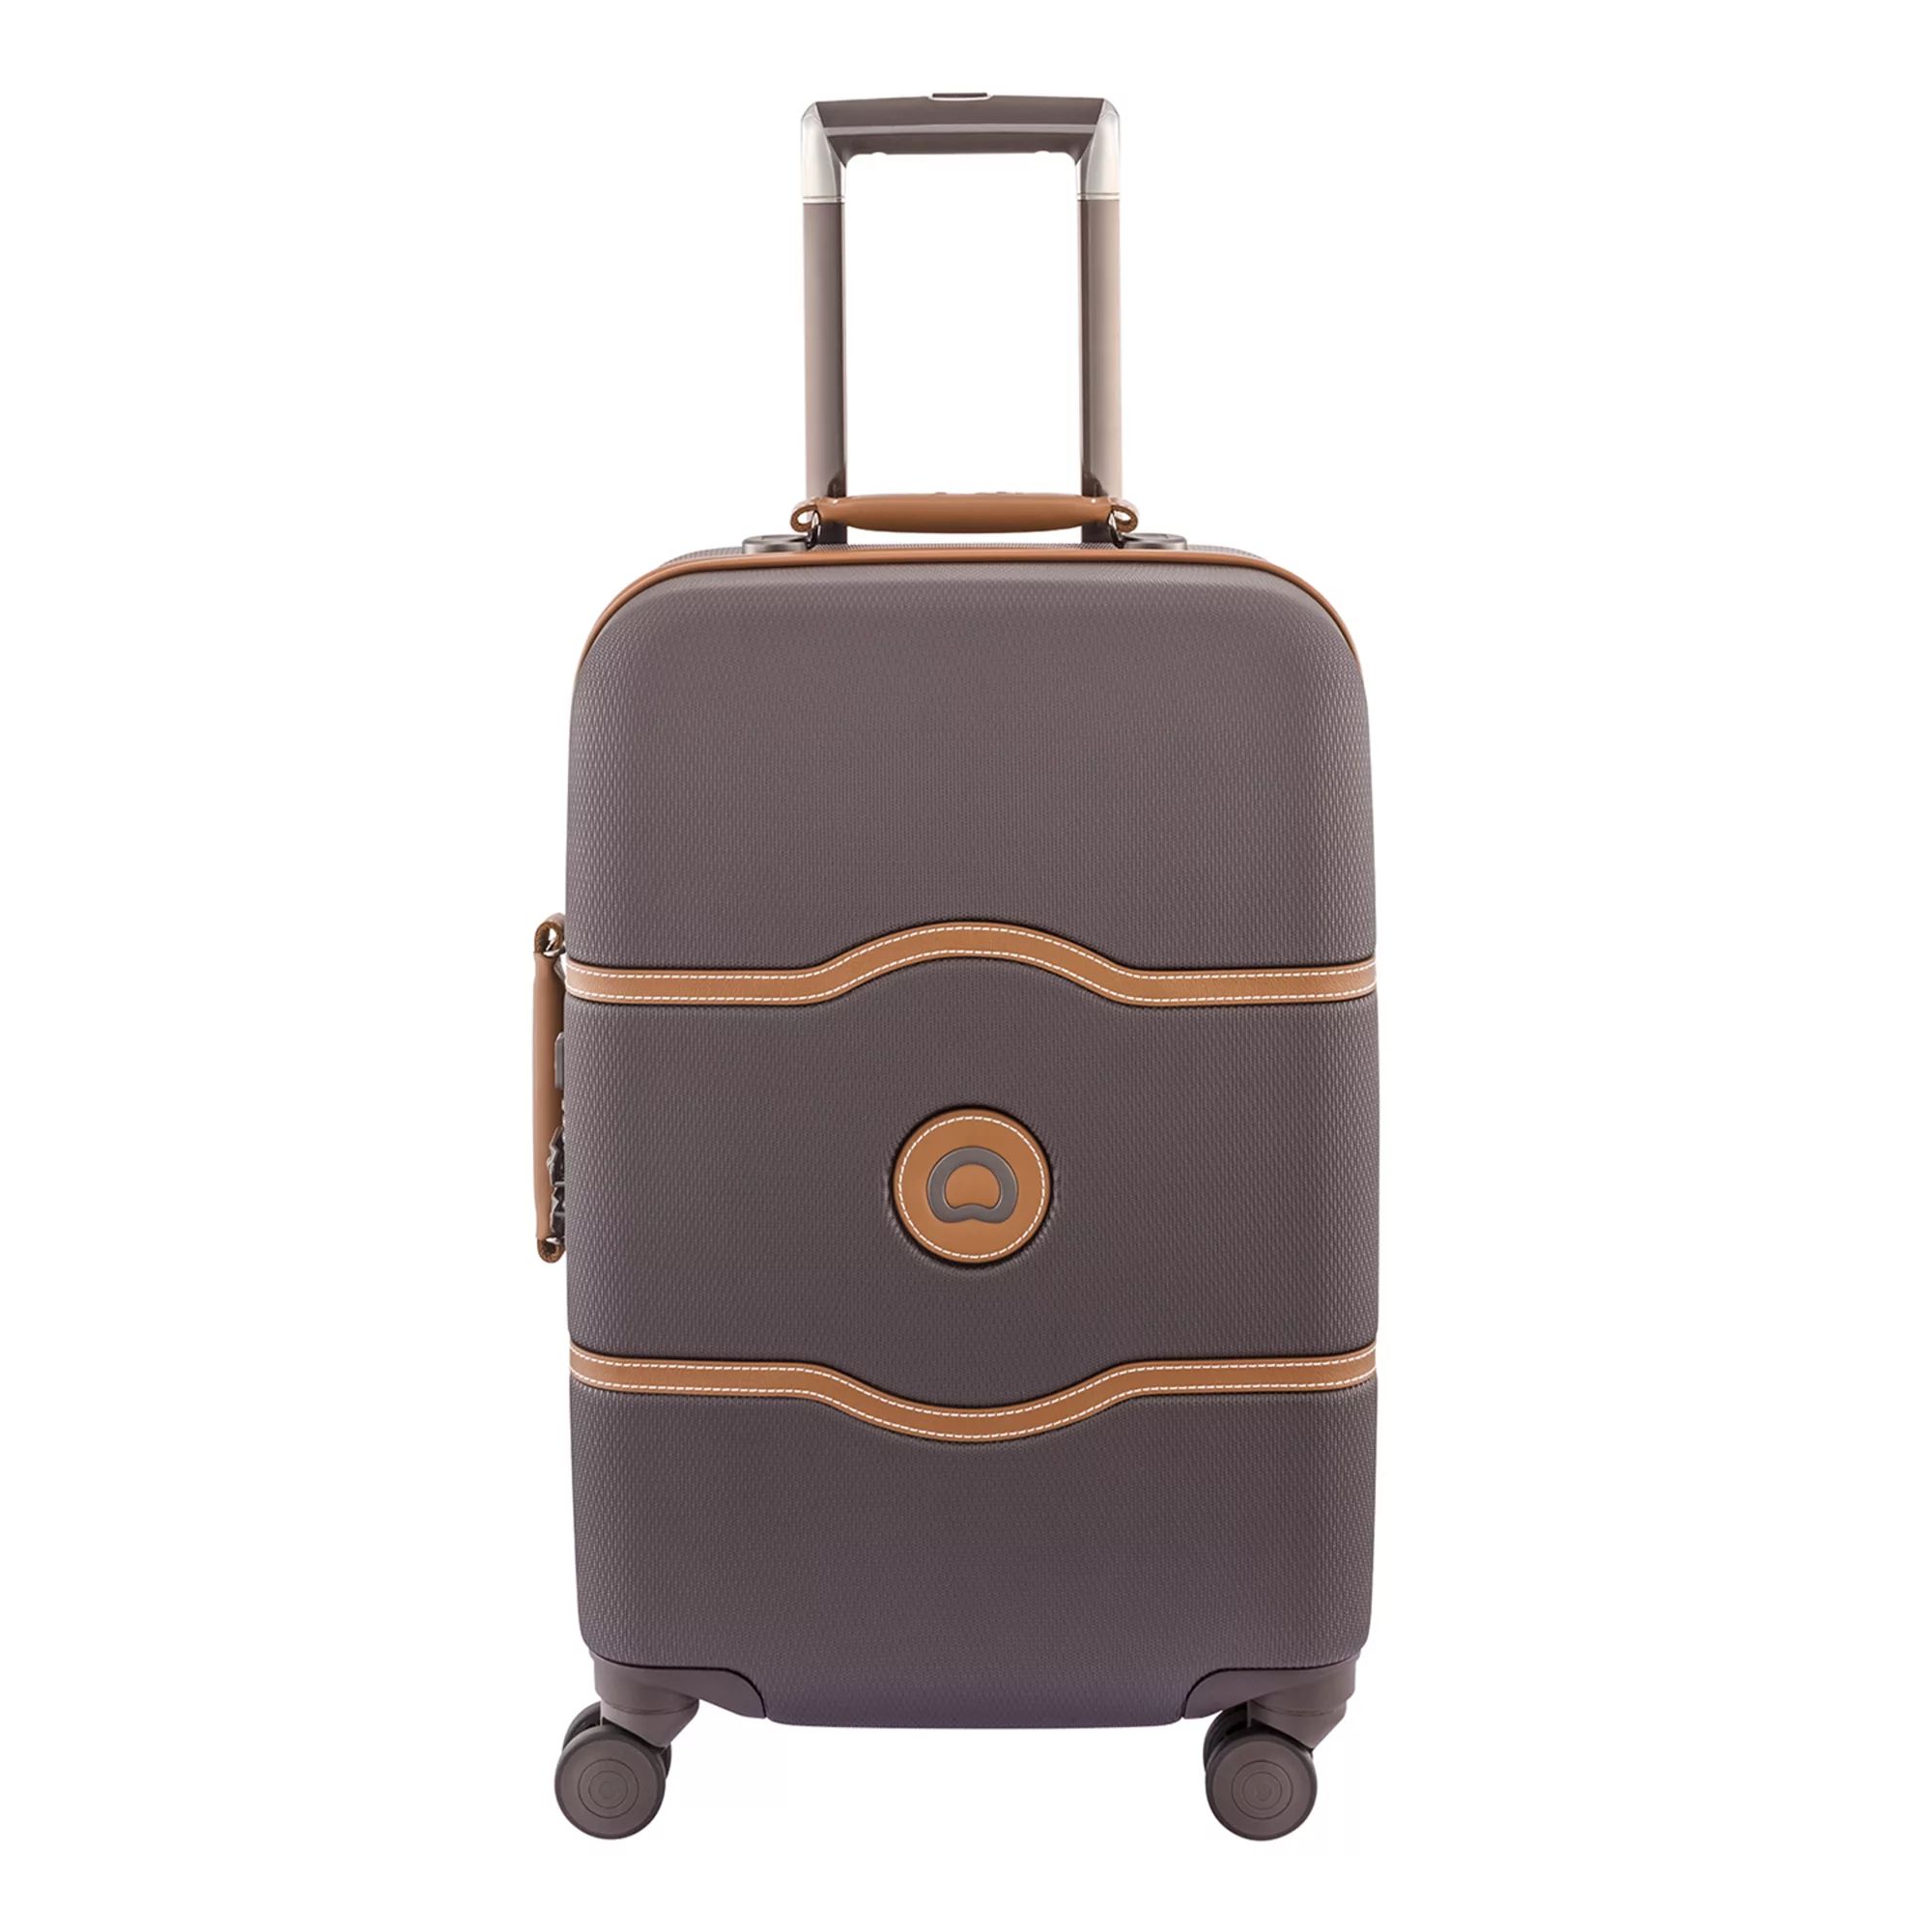 Delsey Chatelet Hardside Spinner Luggage | Kohl's